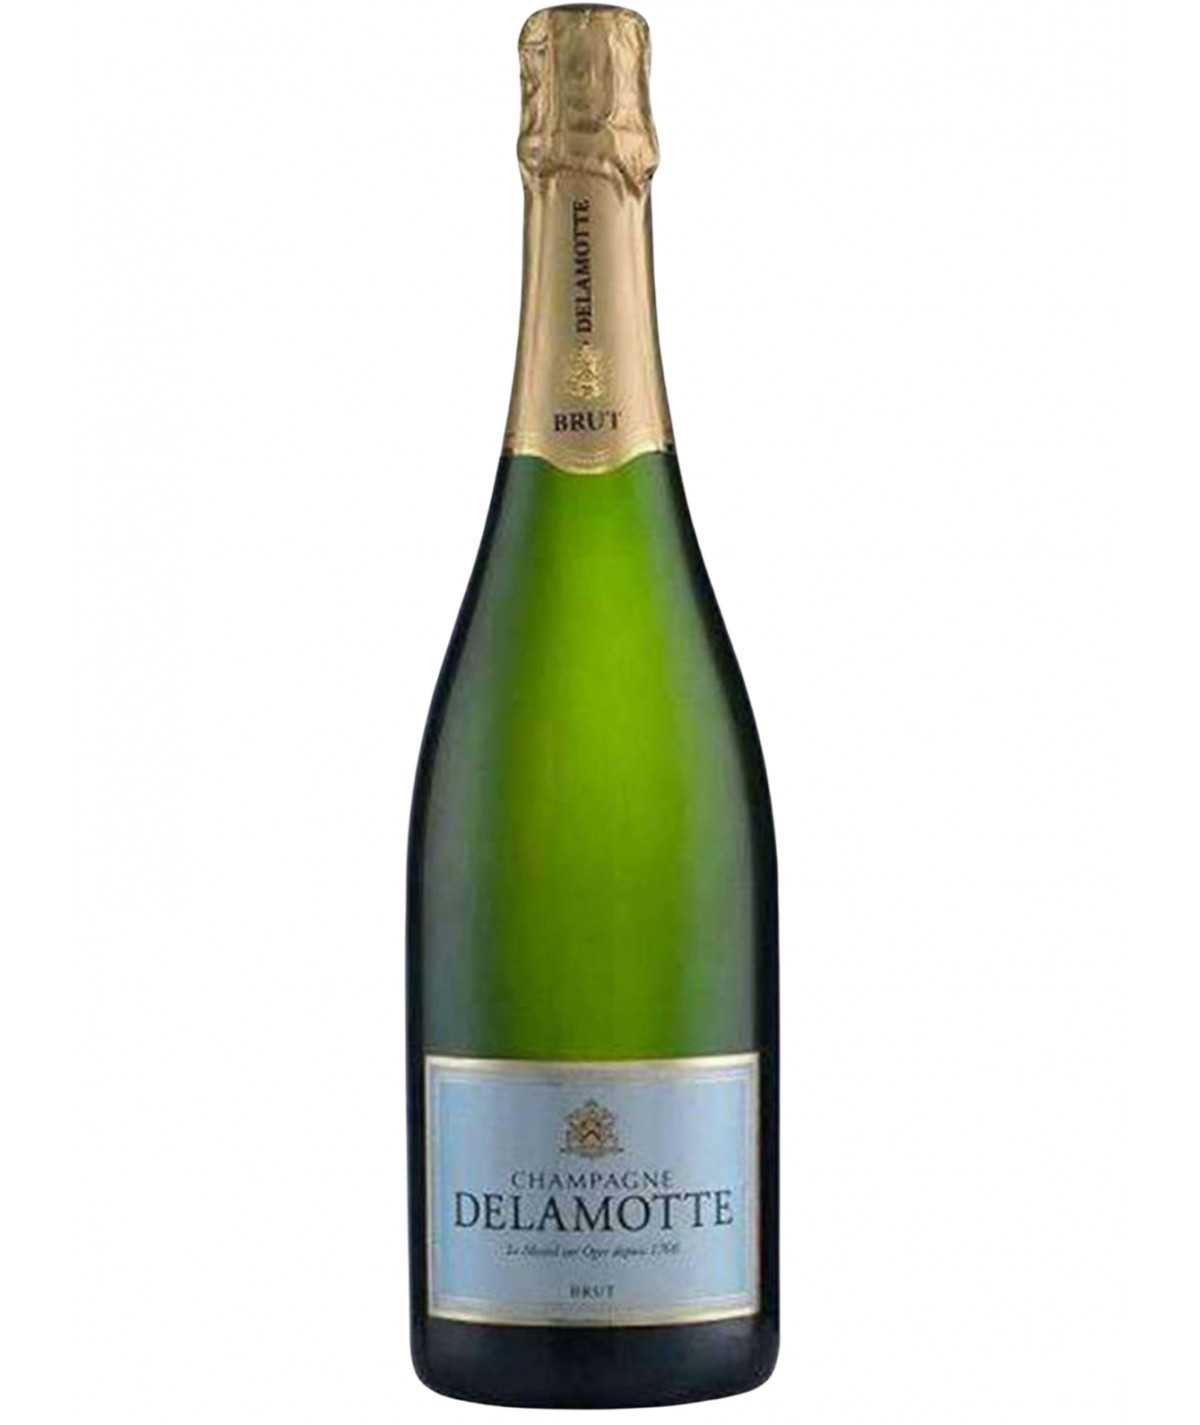 DELAMOTTE Champagner Brut Tradition